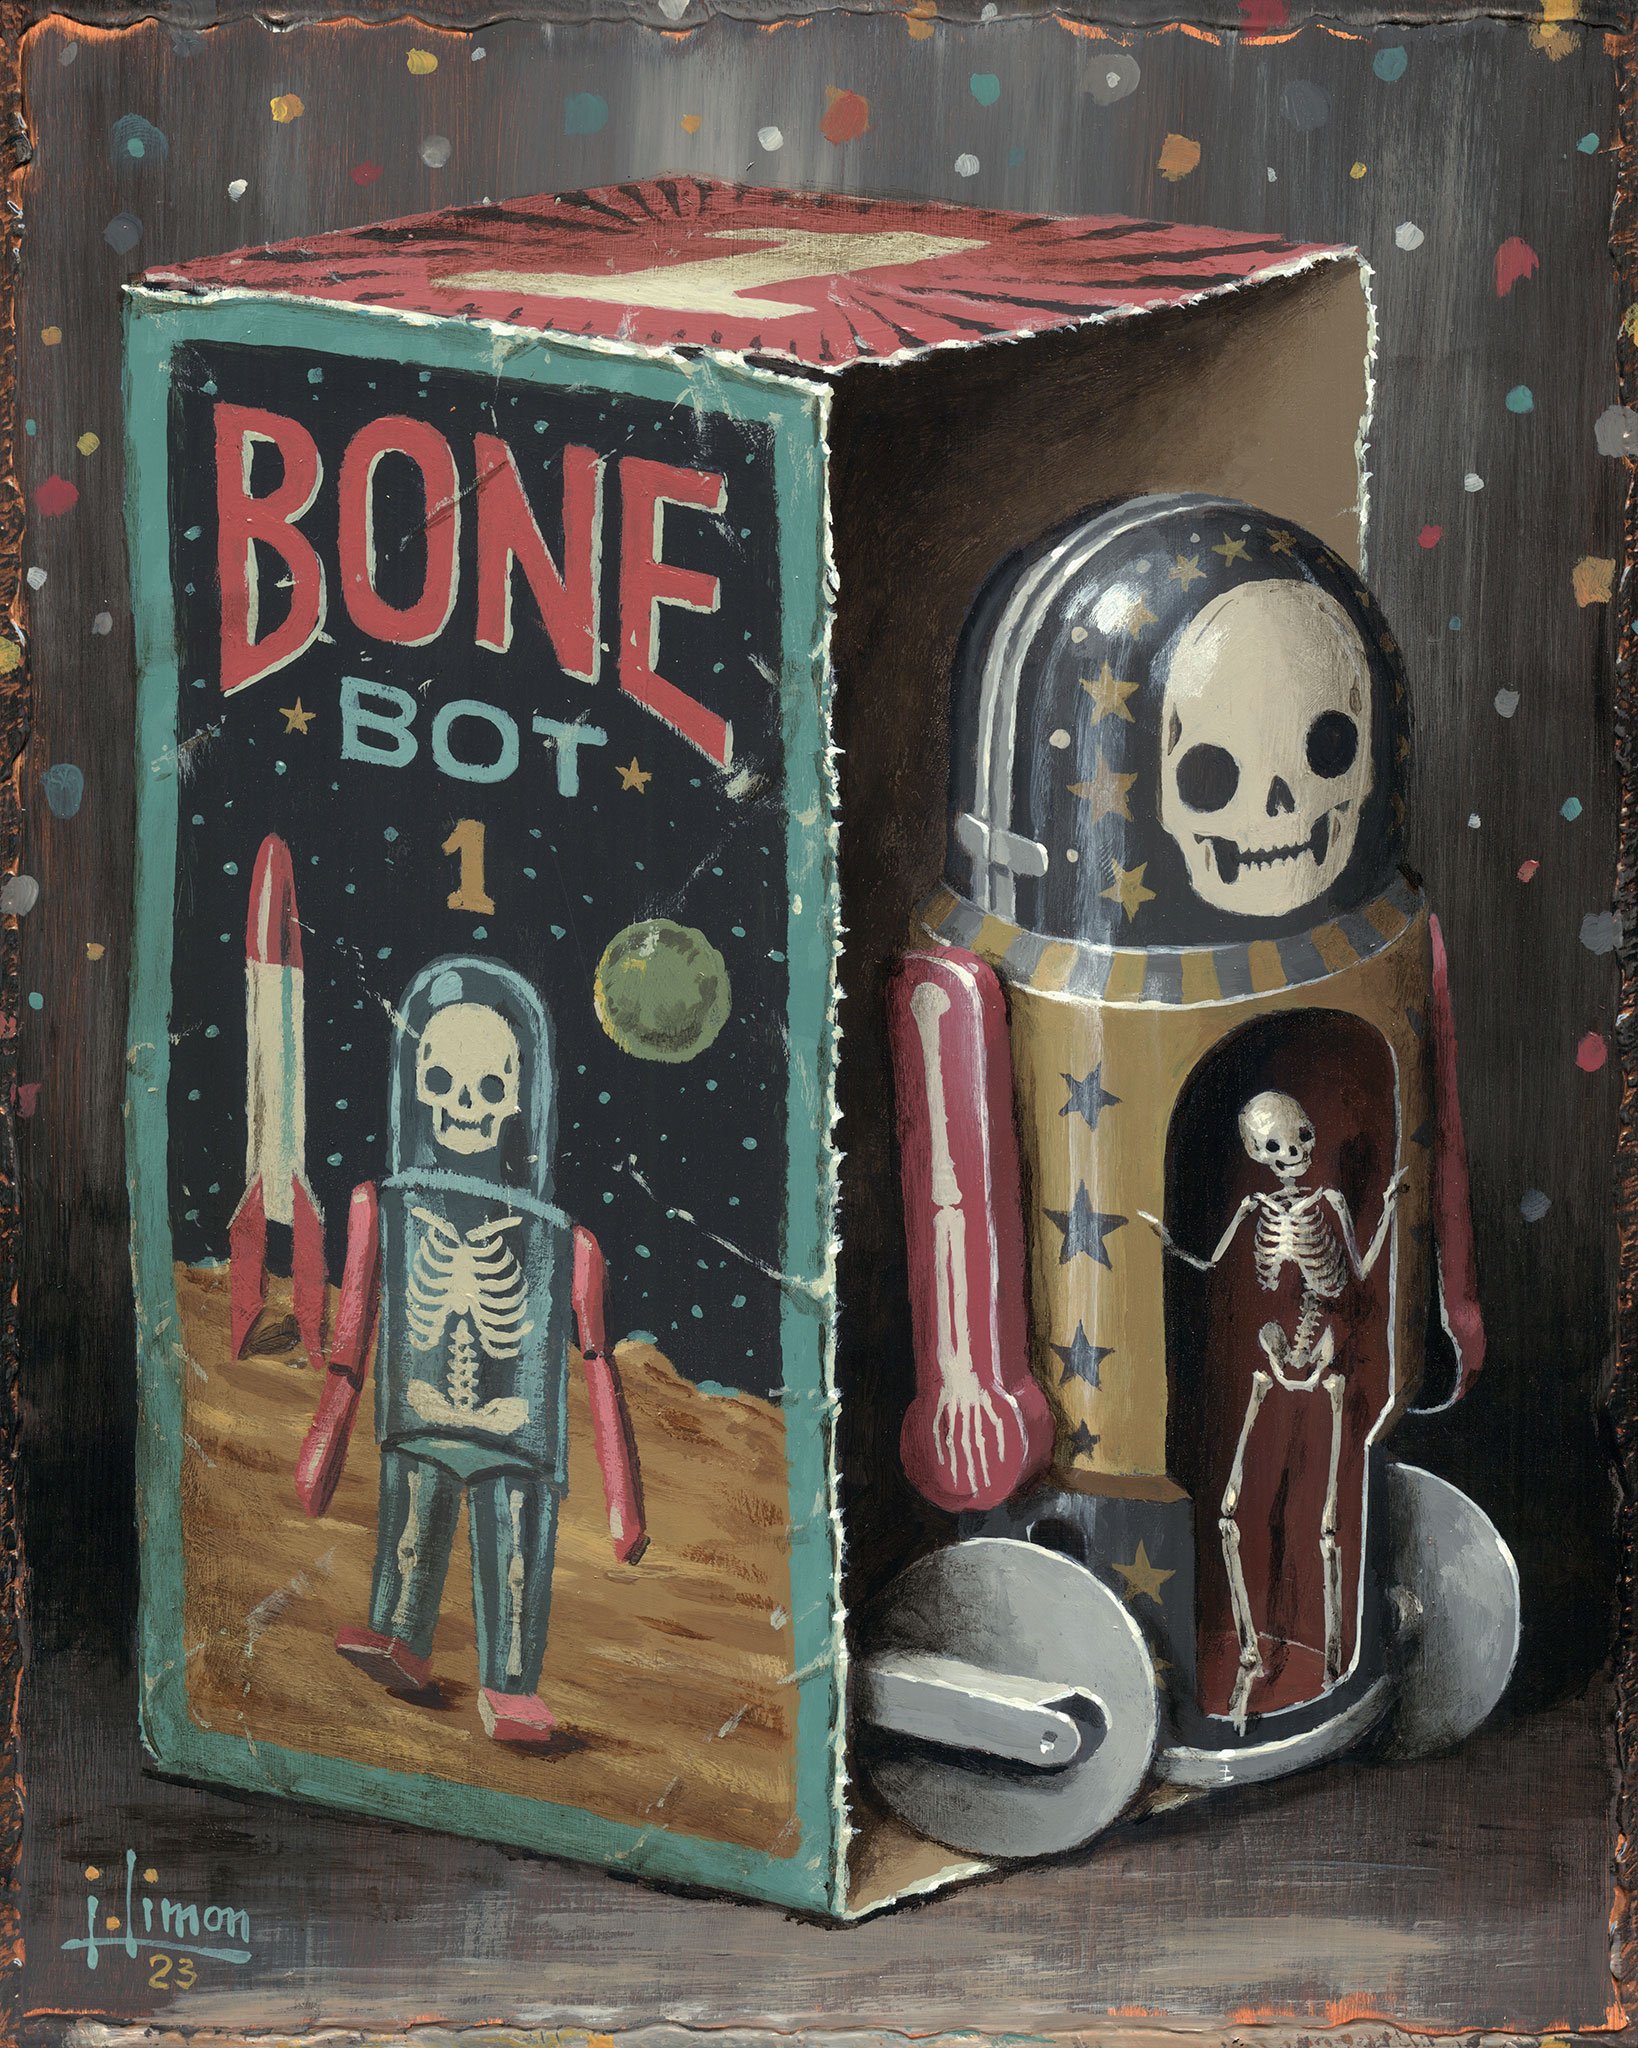 Bone Bot 1